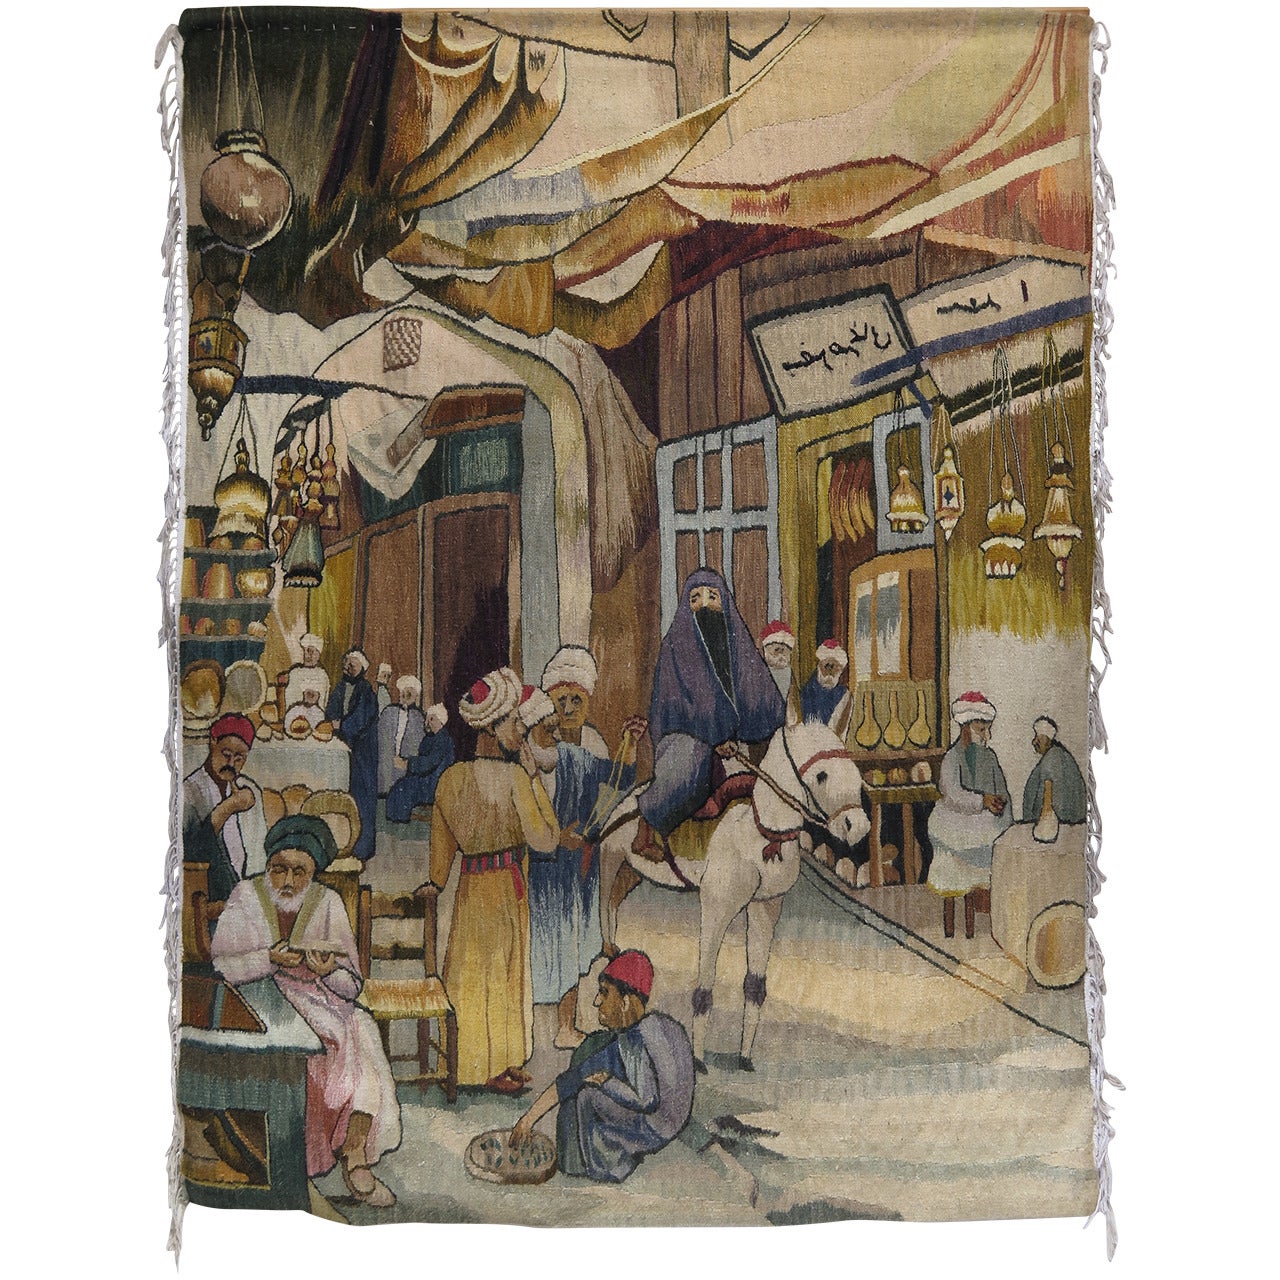 Orientalischer Wandteppich, der eine Straßen- oder Souk-Szene darstellt